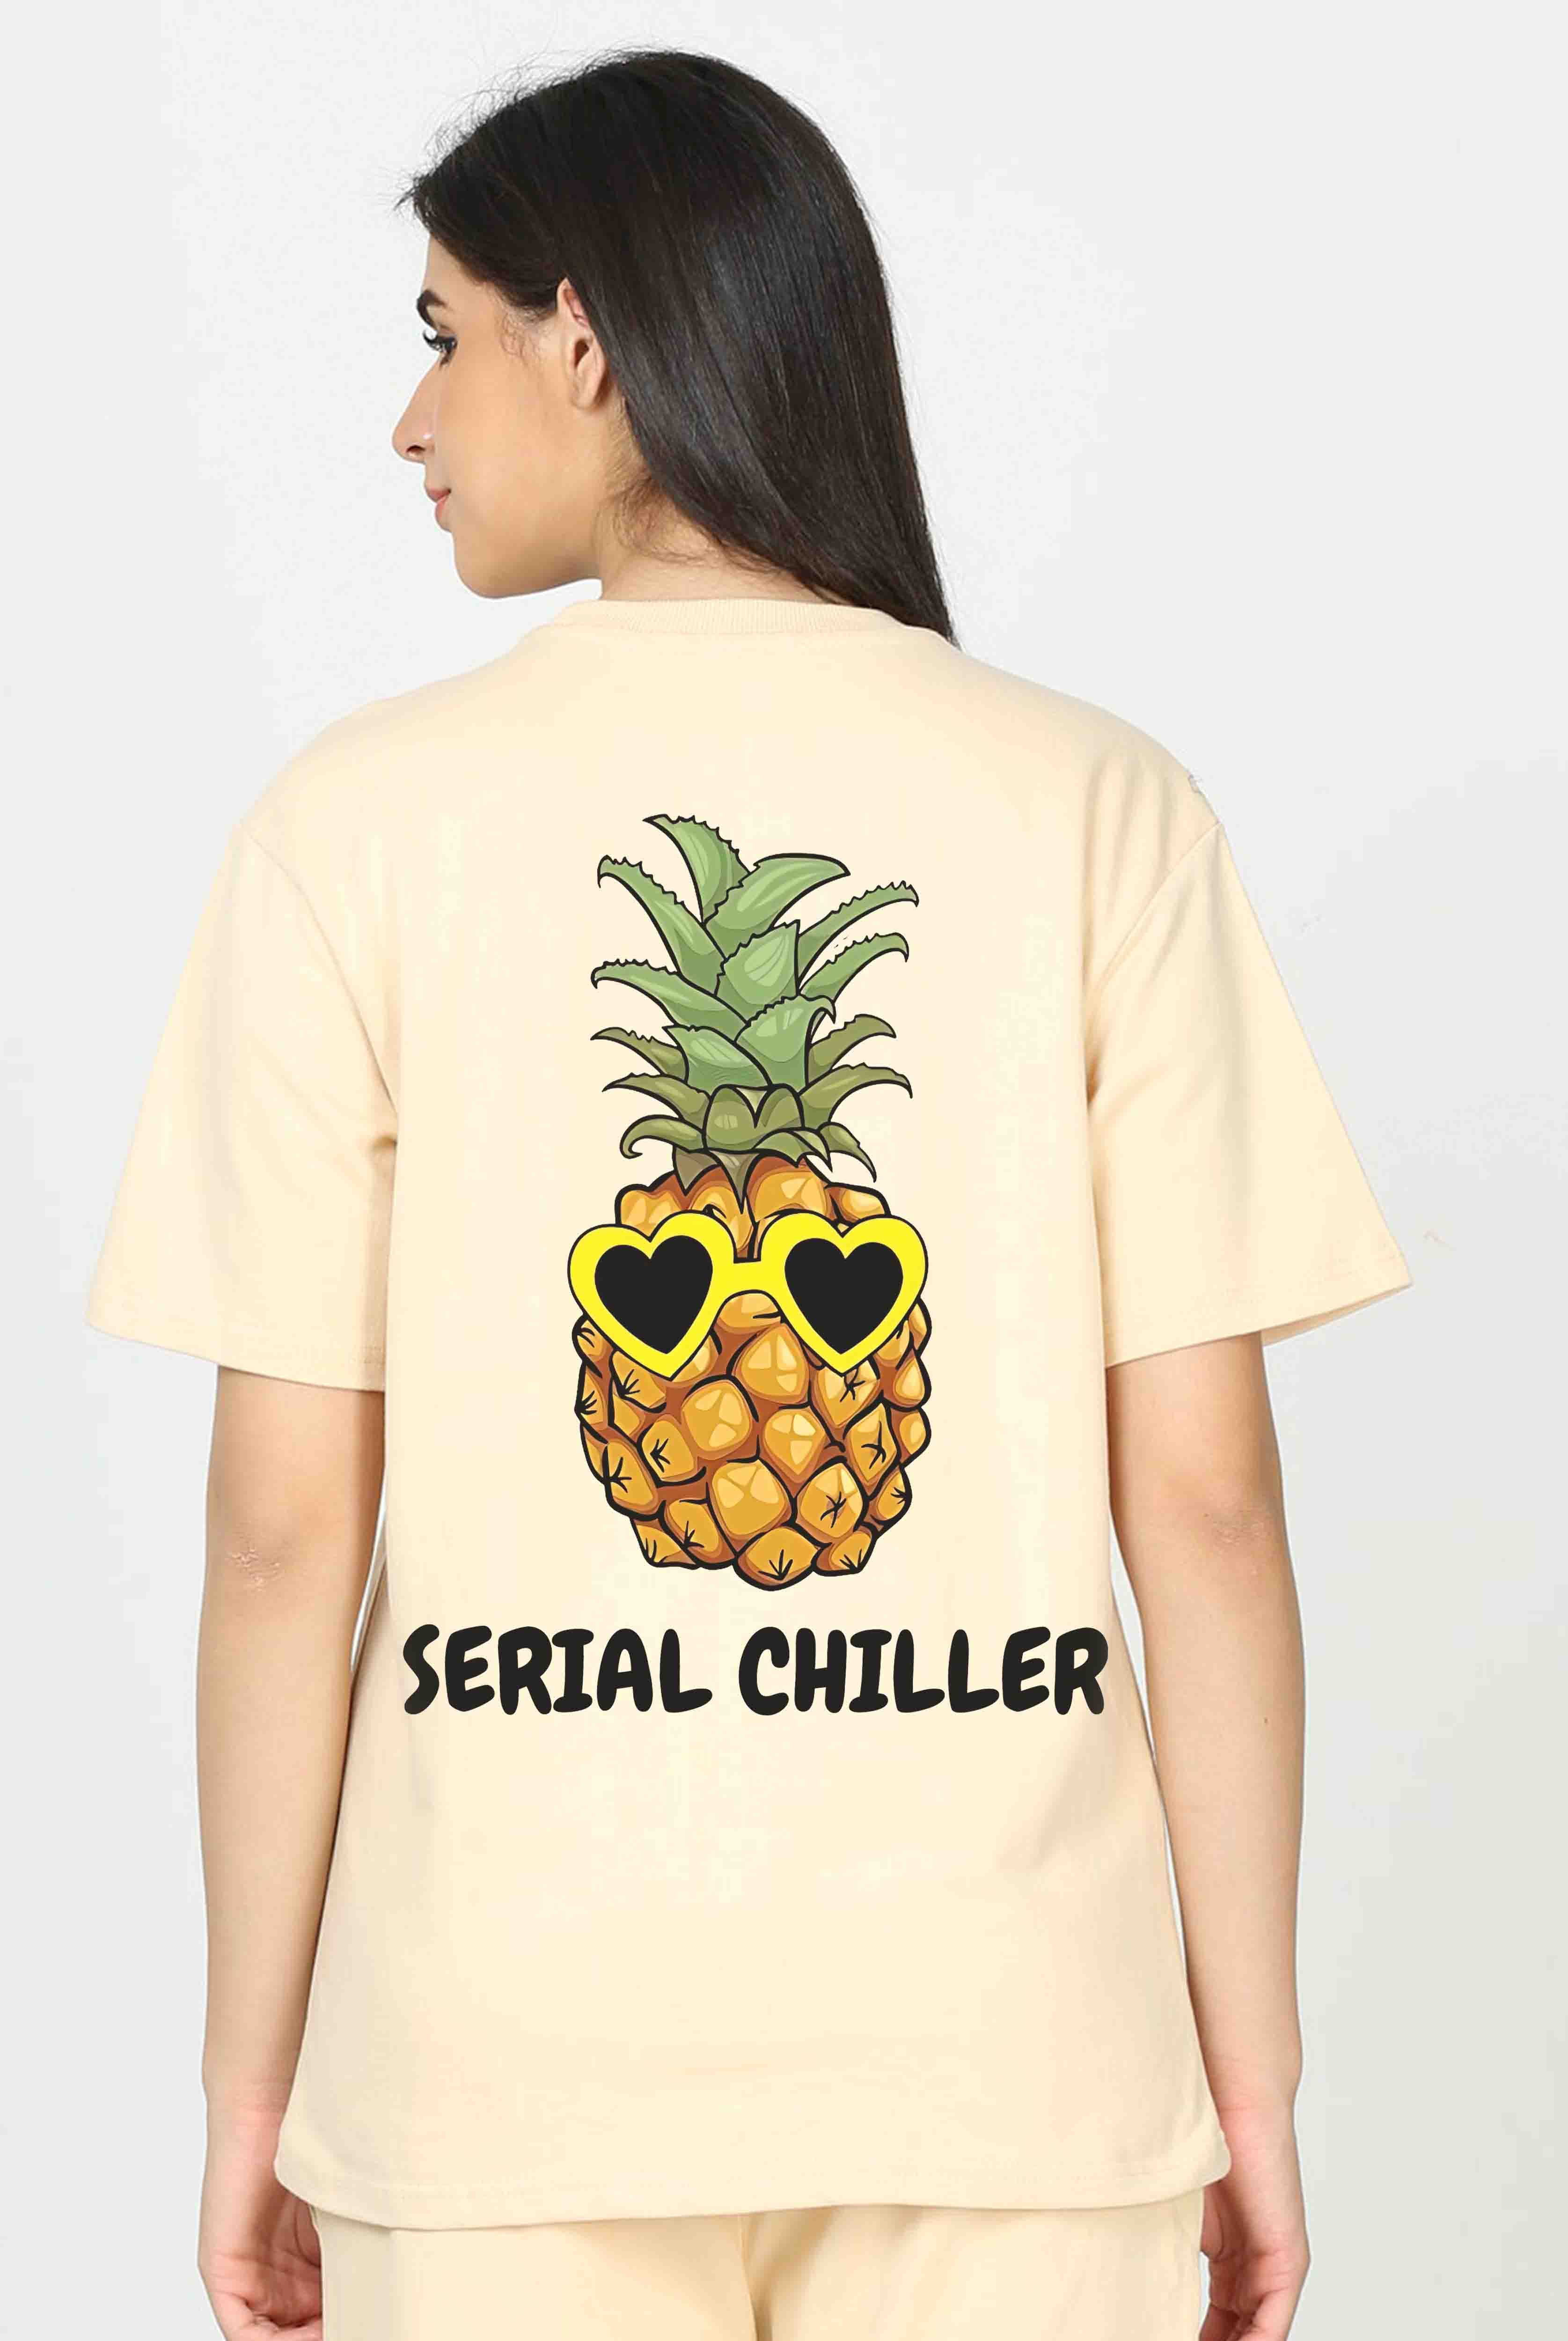 Serial Chiller Women's Oversized T-Shirt